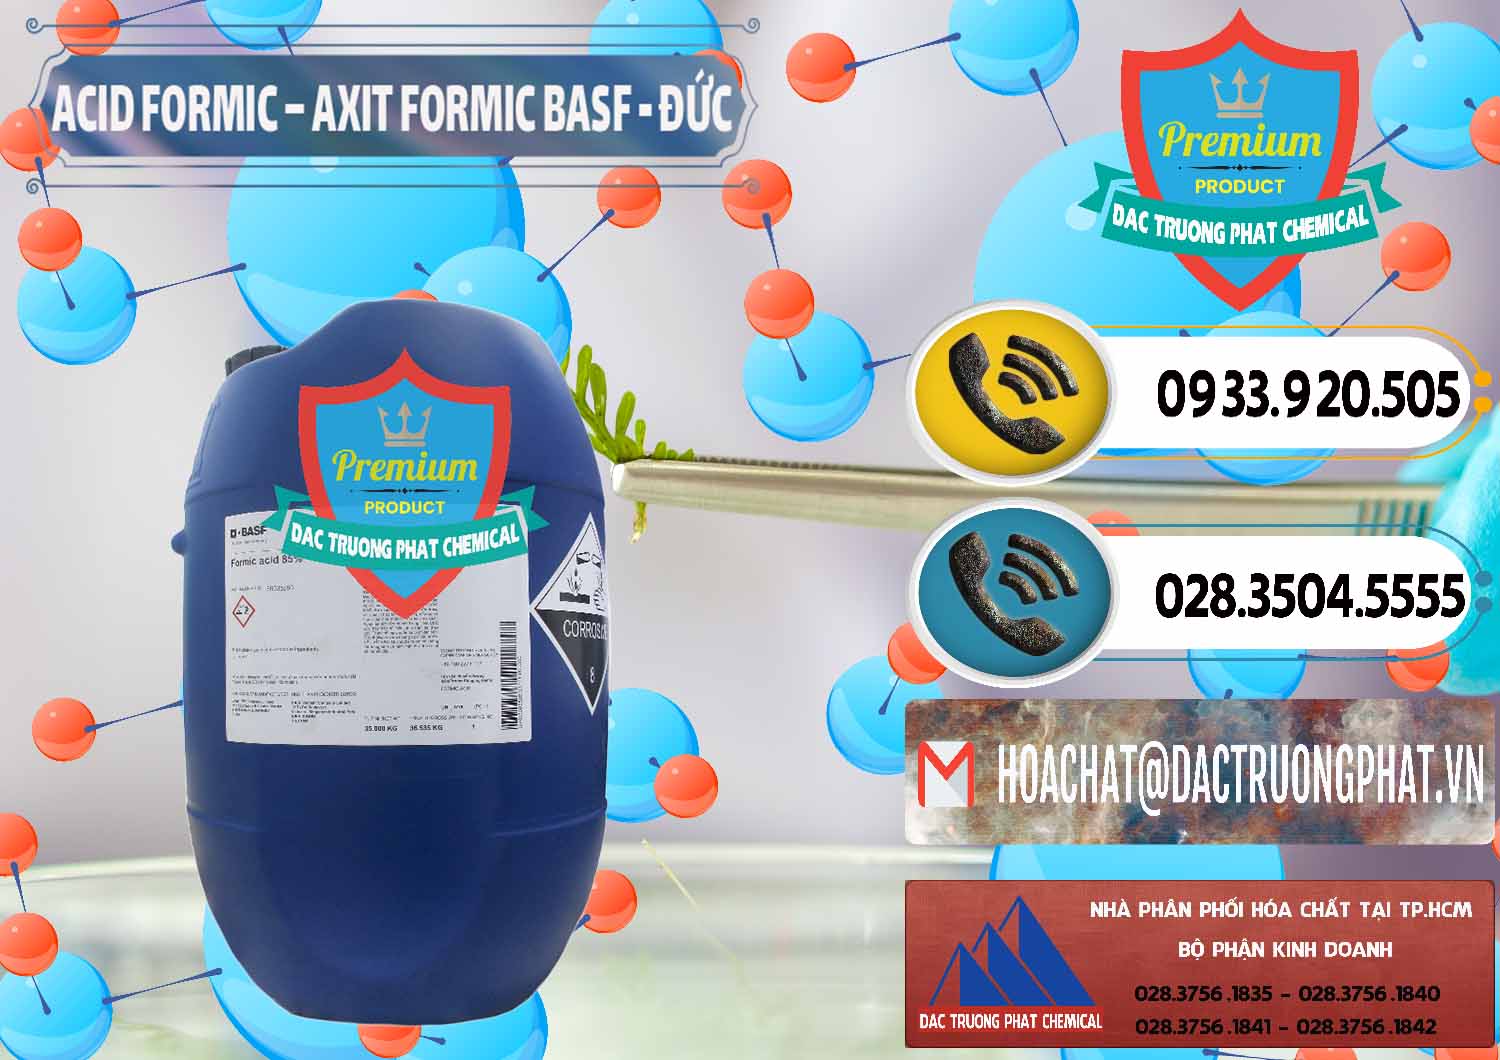 Kinh doanh - bán Acid Formic - Axit Formic BASF Đức Germany - 0028 - Công ty chuyên kinh doanh & phân phối hóa chất tại TP.HCM - hoachatdetnhuom.vn